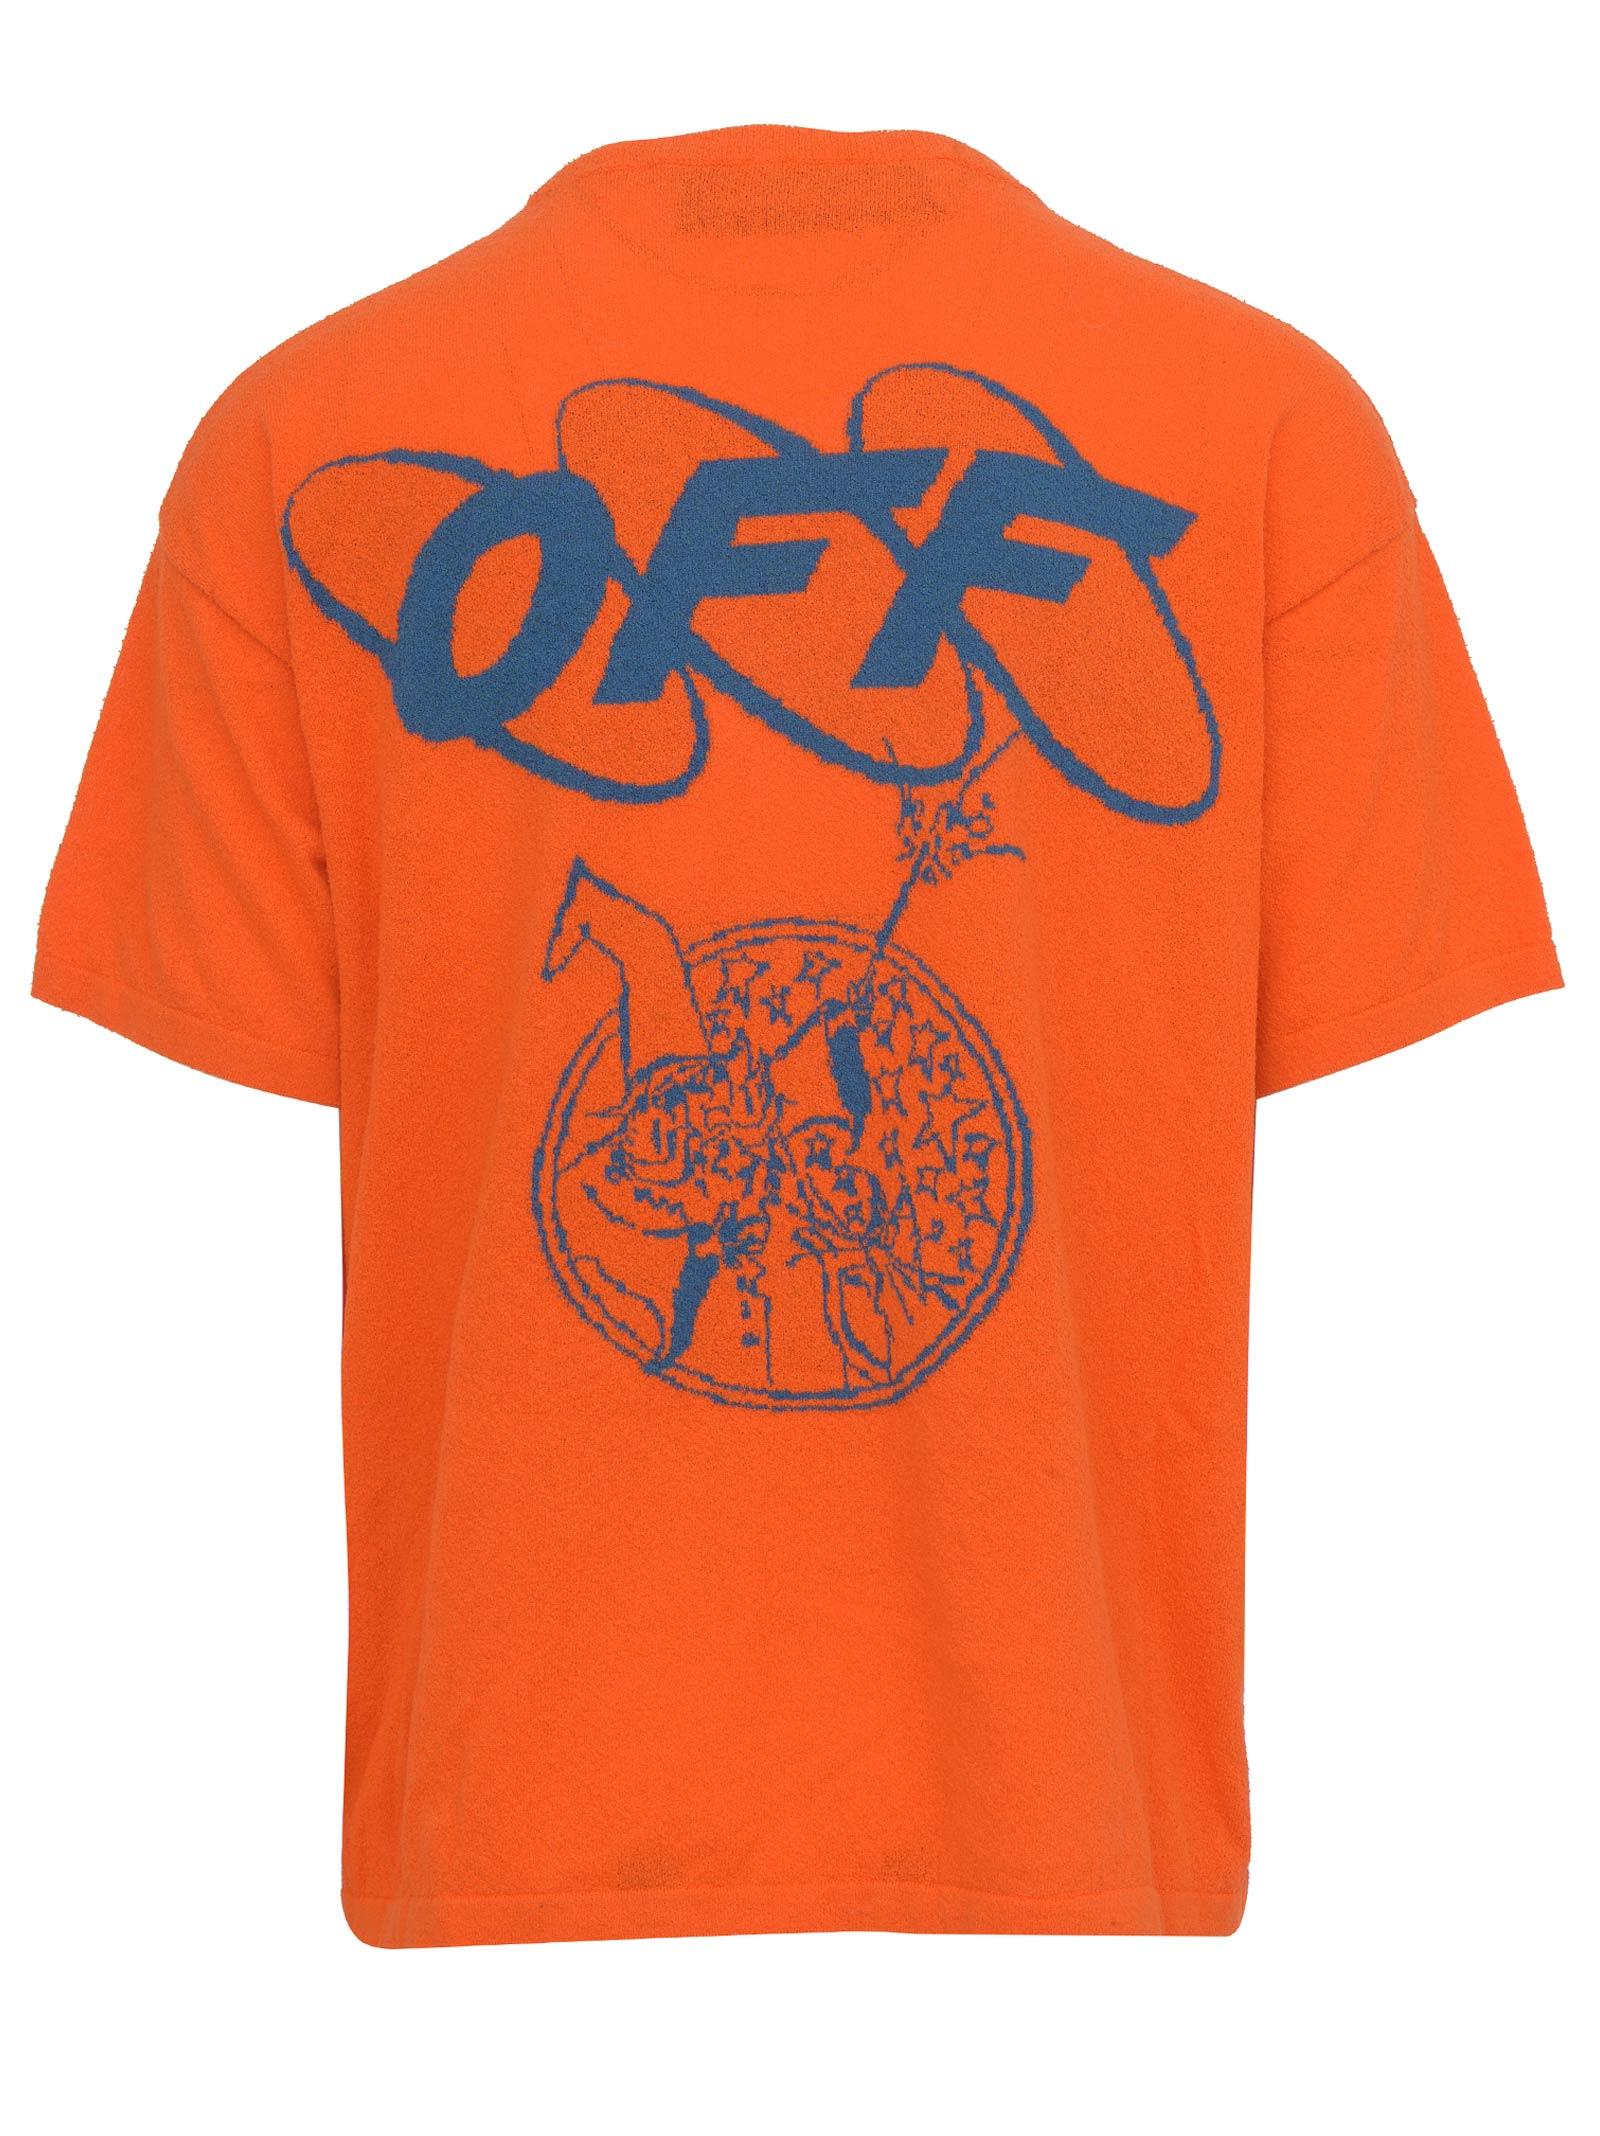 NWT OFF-WHITE C/O VIRGIL ABLOH Orange Pajama Style Shirt Size 40 $1260